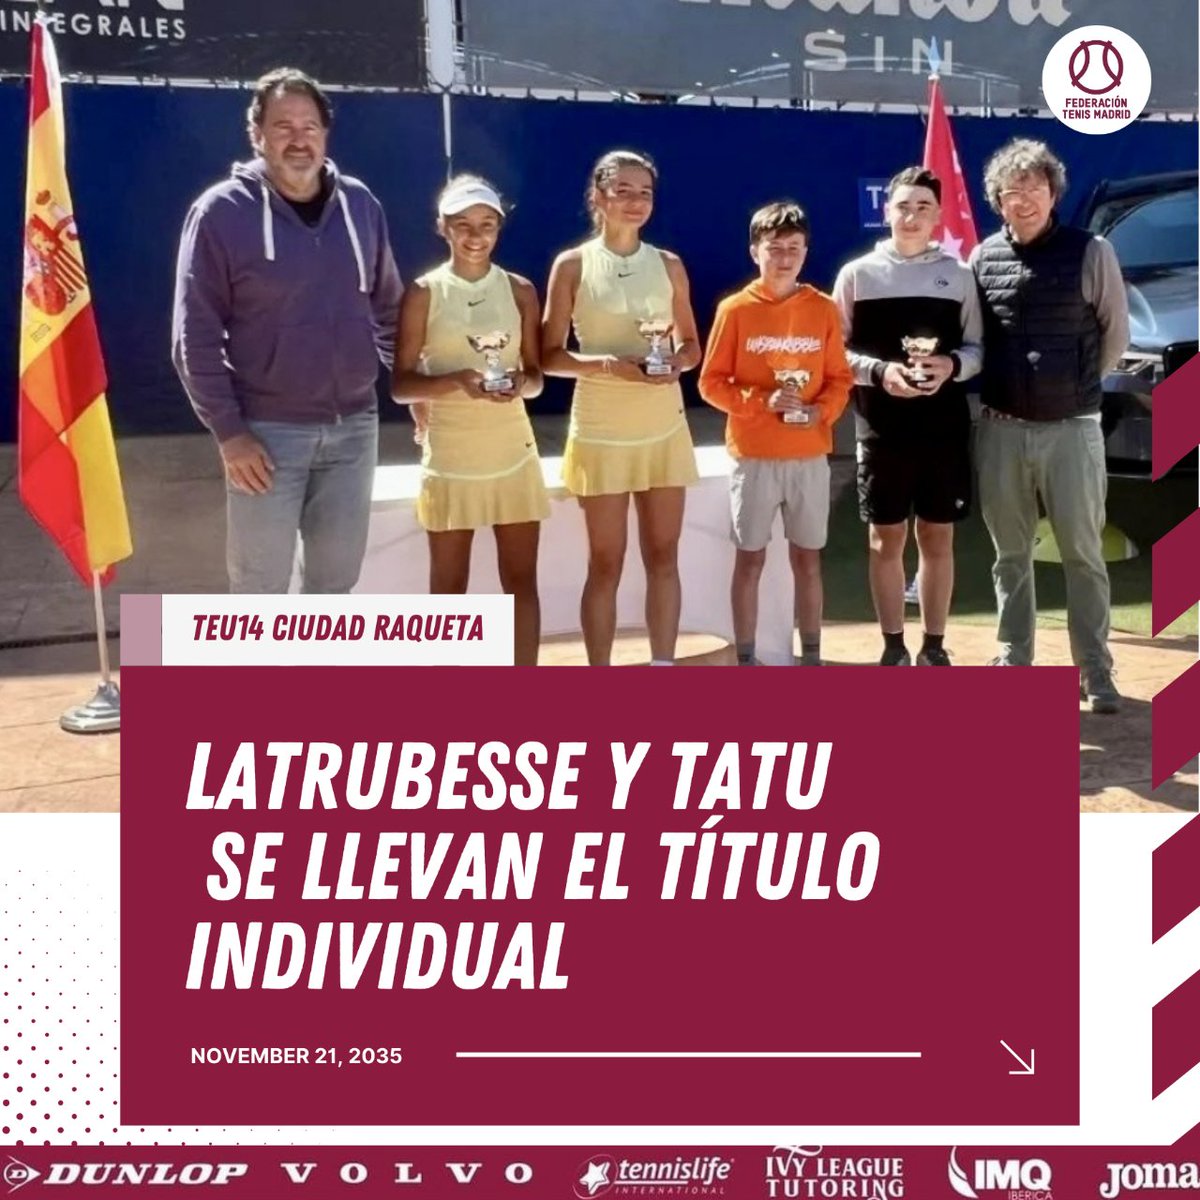 𝗧𝗘𝗡𝗡𝗜𝗦 𝗘𝗨𝗥𝗢𝗣𝗘 𝗖𝗜𝗨𝗗𝗔𝗗 𝗥𝗔𝗤𝗨𝗘𝗧𝗔  🏁La tercera edición del Torneo Internacional de Tenis Villa de Madrid, correspondiente al certamen Tennis Europe Junior Tour para jugadores sub-14 de categoría 3, se celebró en Ciudad de la Raqueta. ftm.es/noticias/gener…